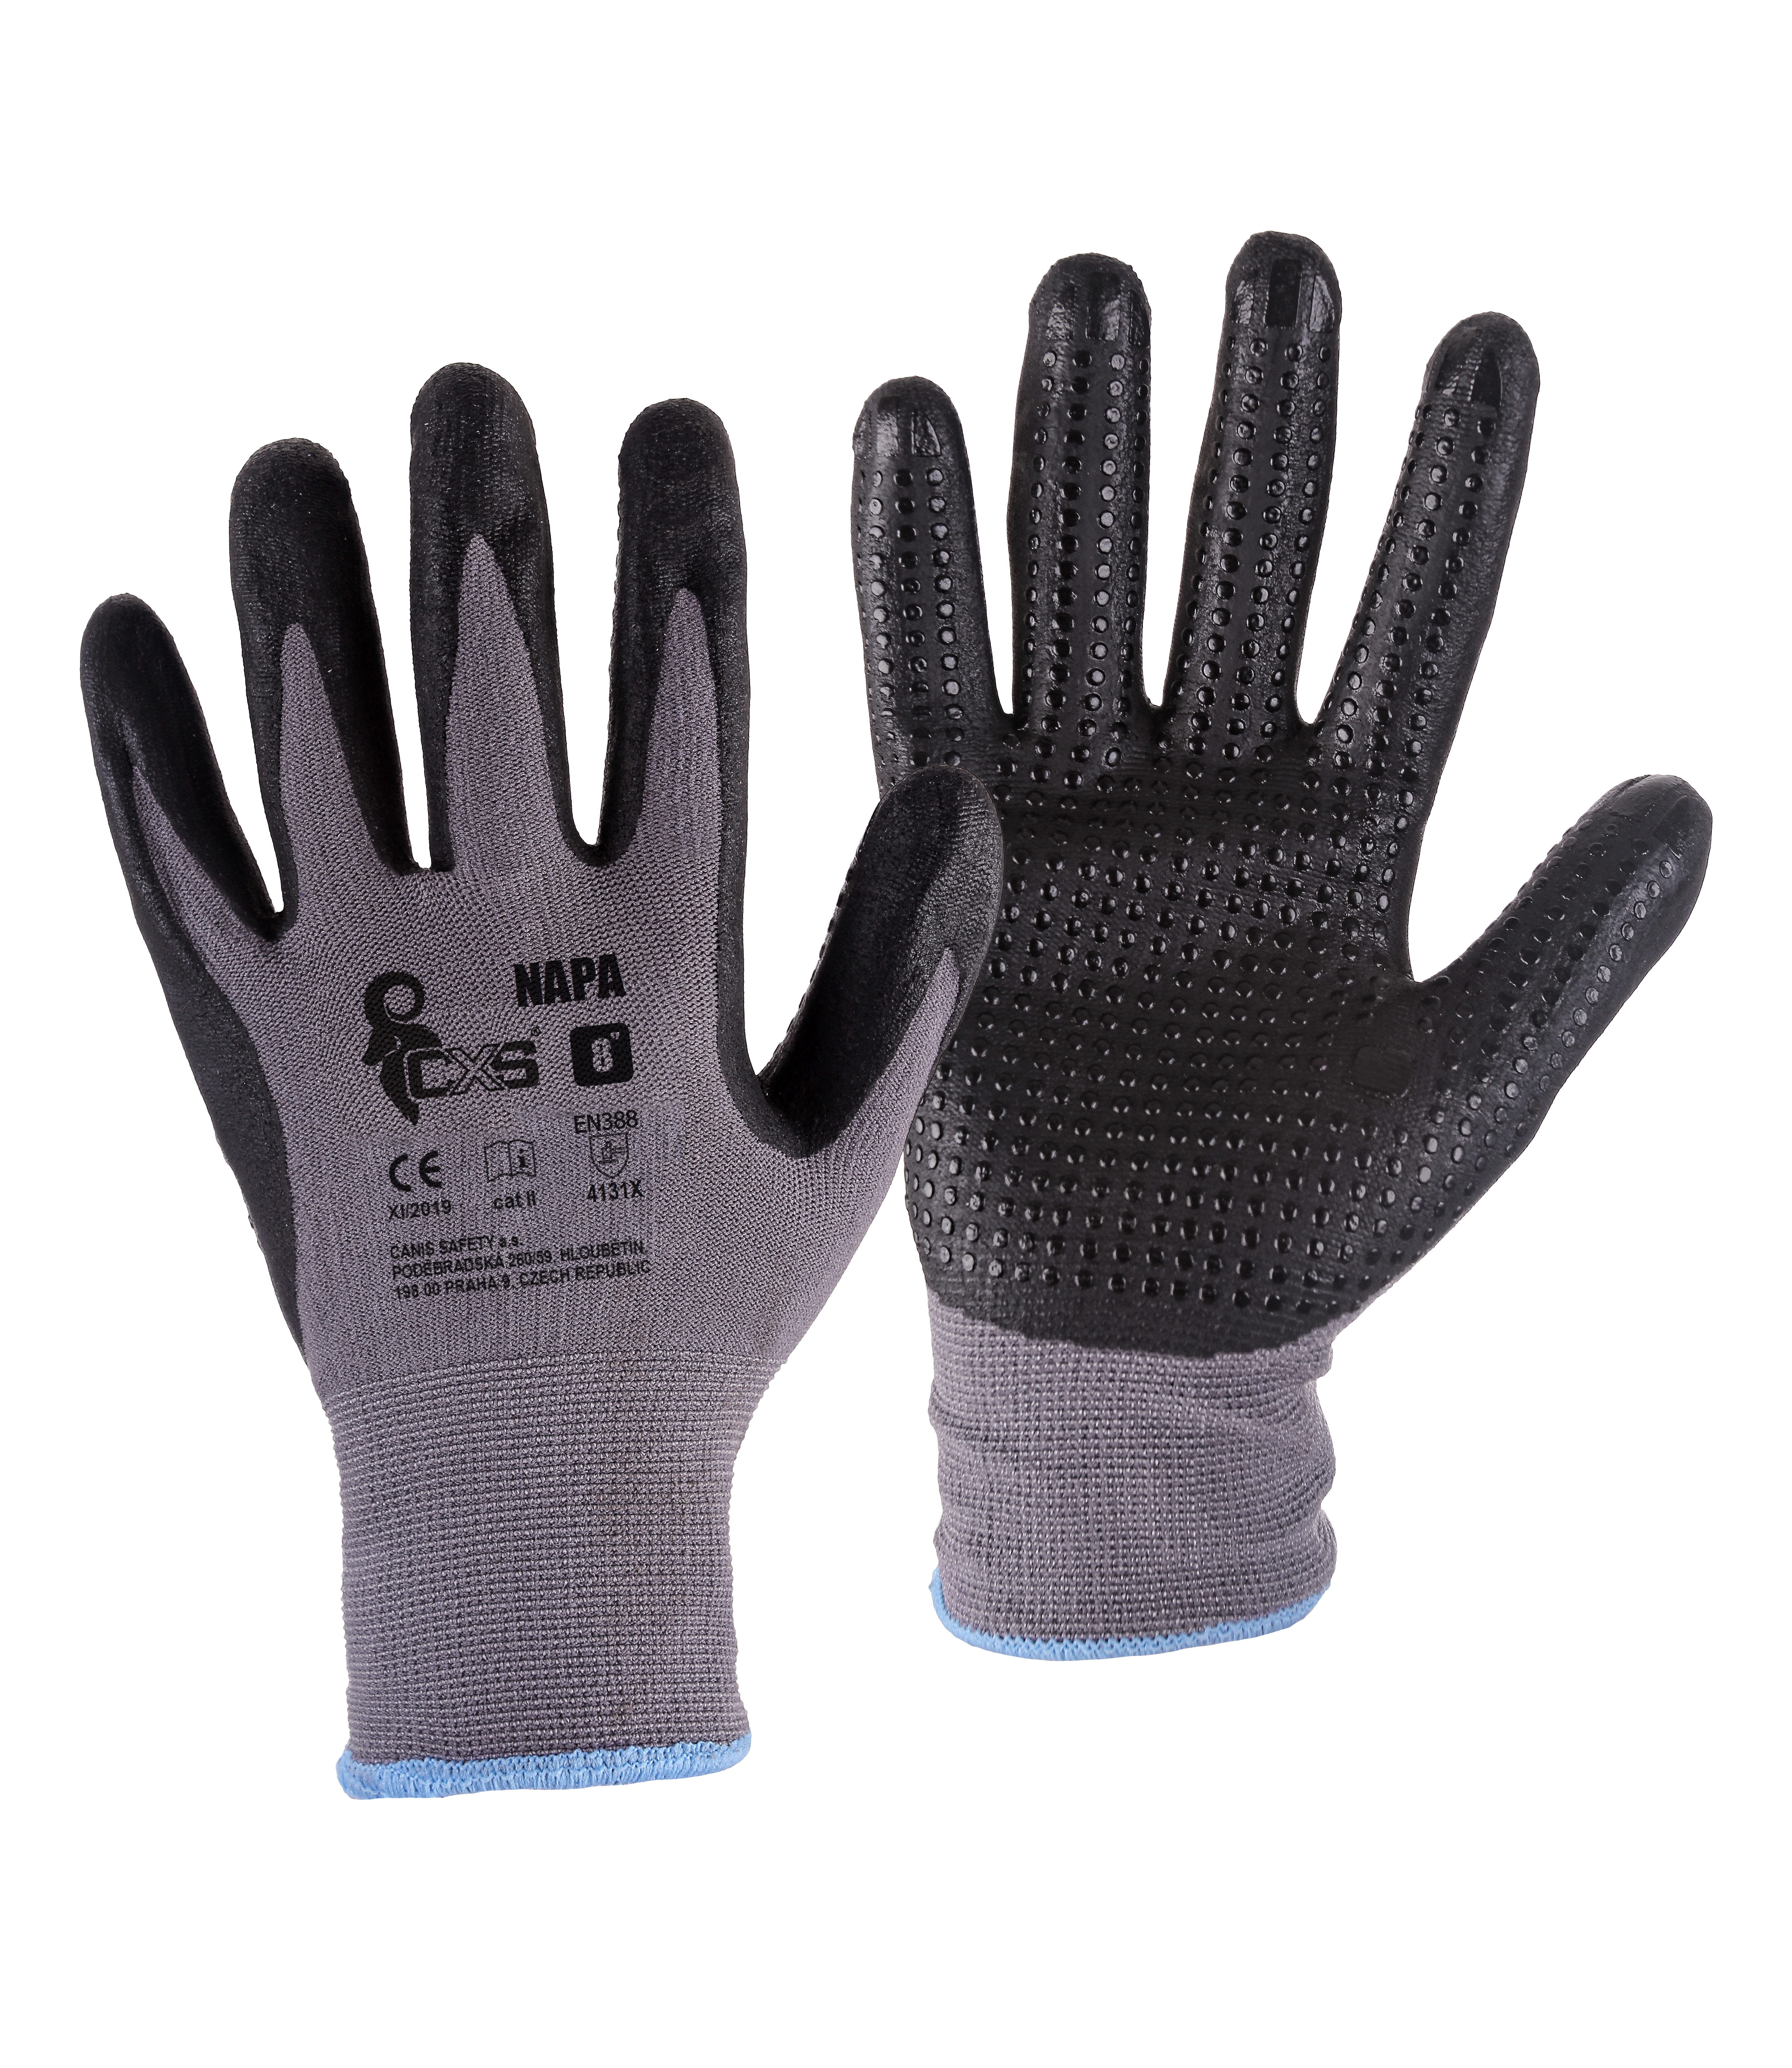 rukavice NAPA, s úpletem, šedo - černé, velikost 9 0.04 Kg TOP Sklad4 606036 96